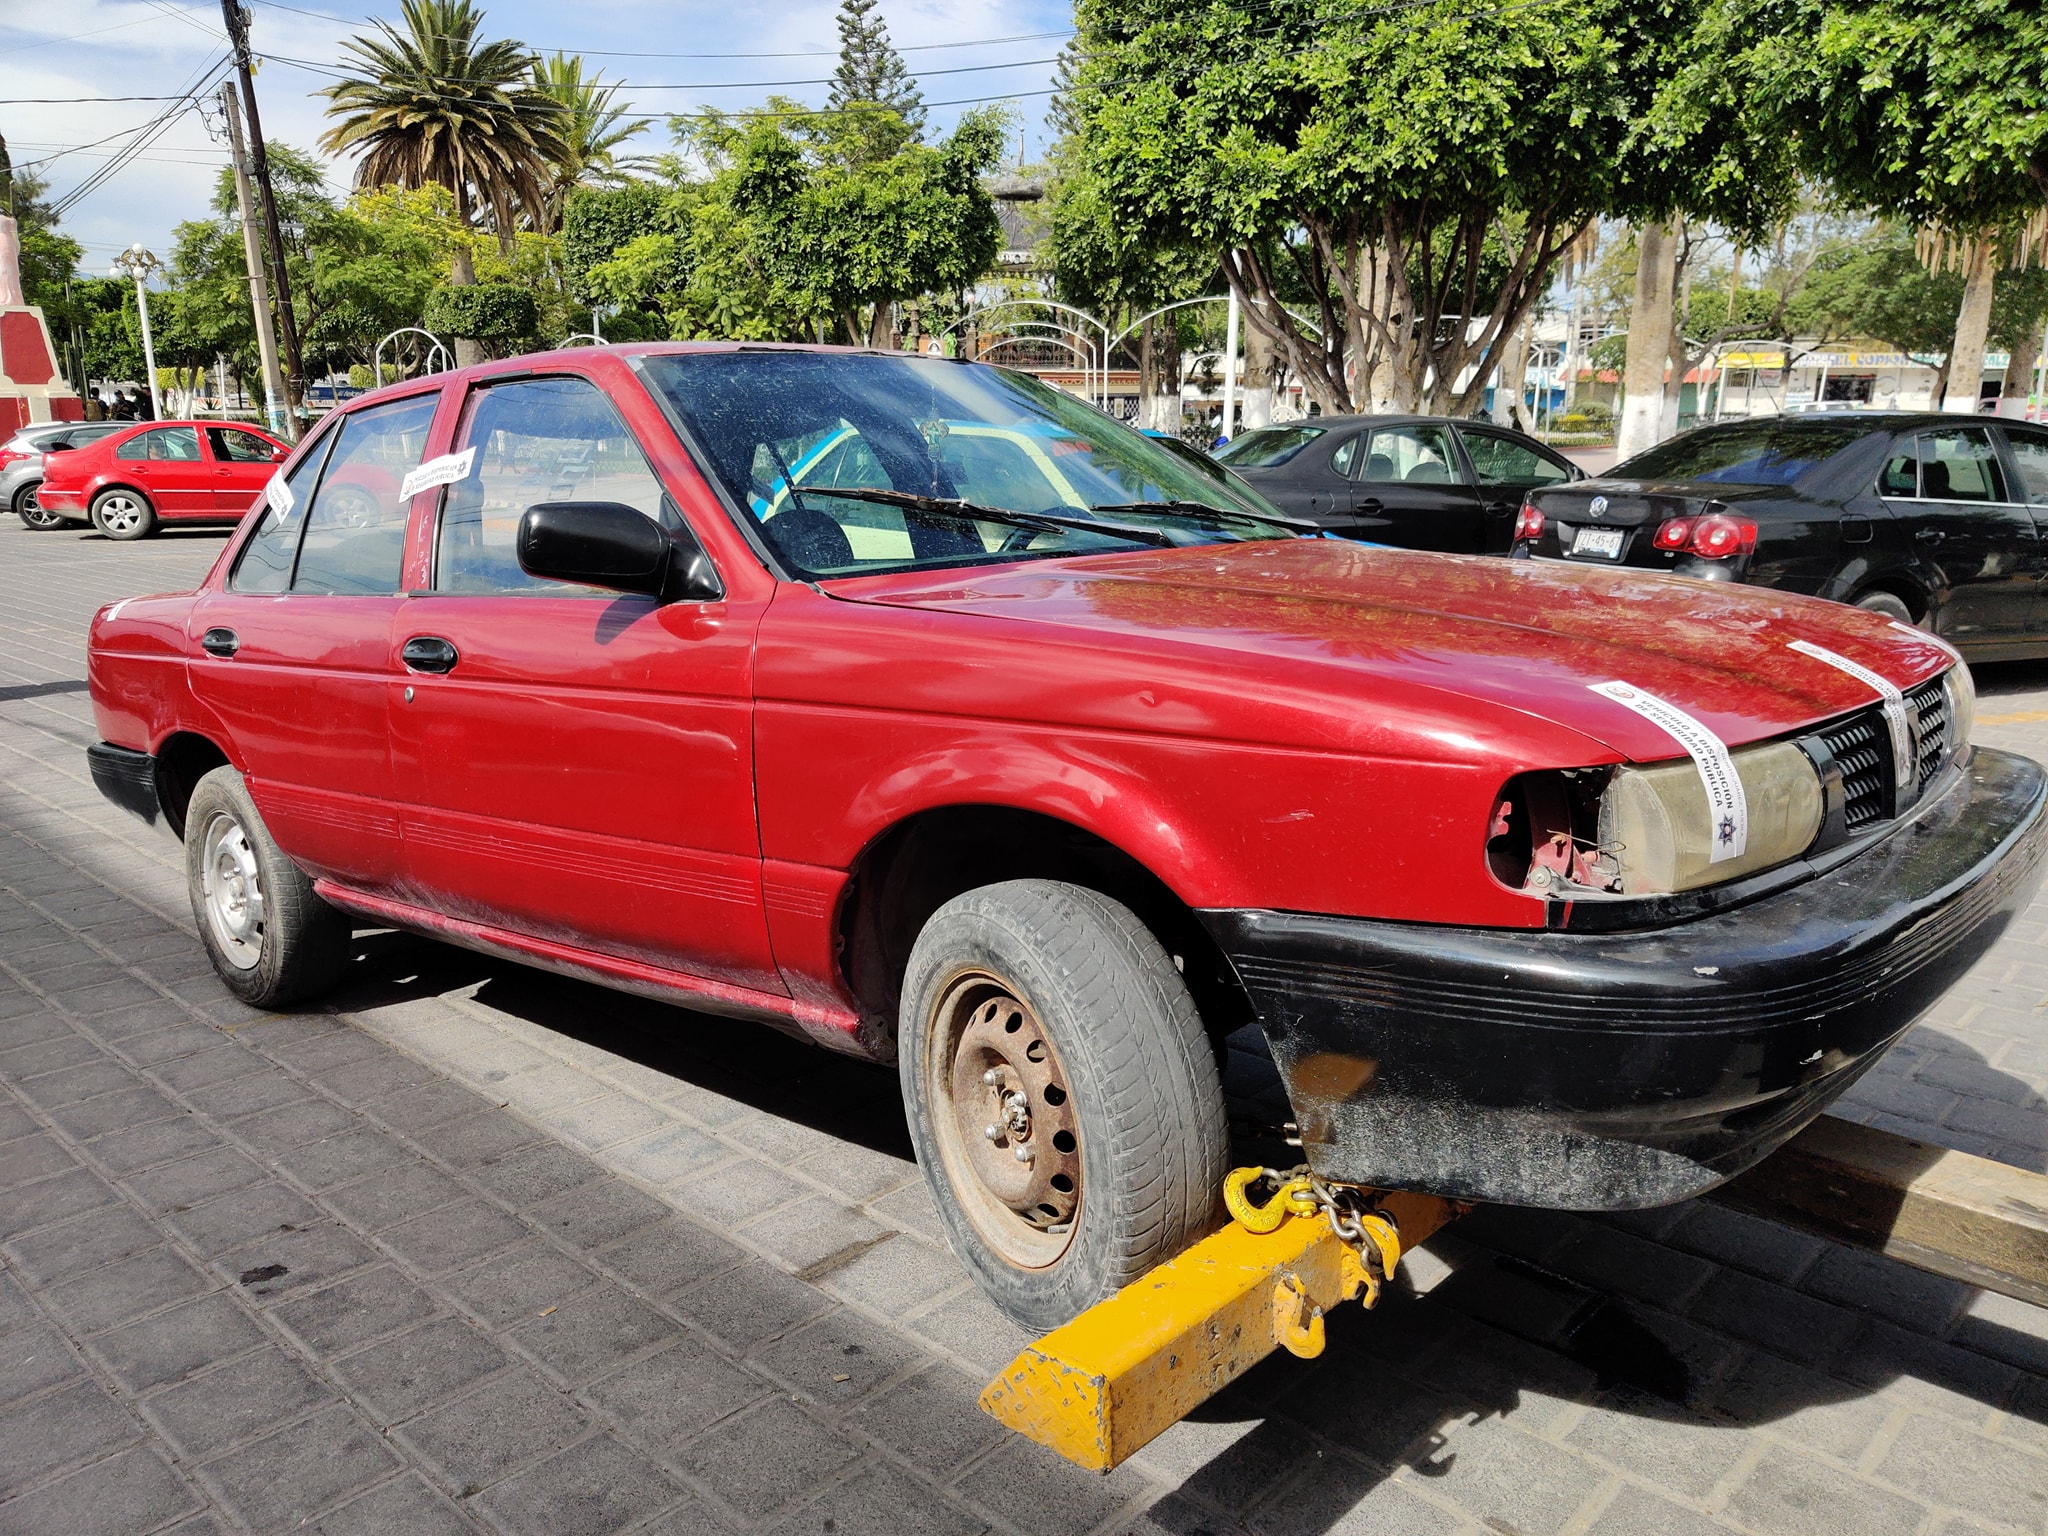 En Tlacotepec ladrones abandonan vehículo con reporte de robo